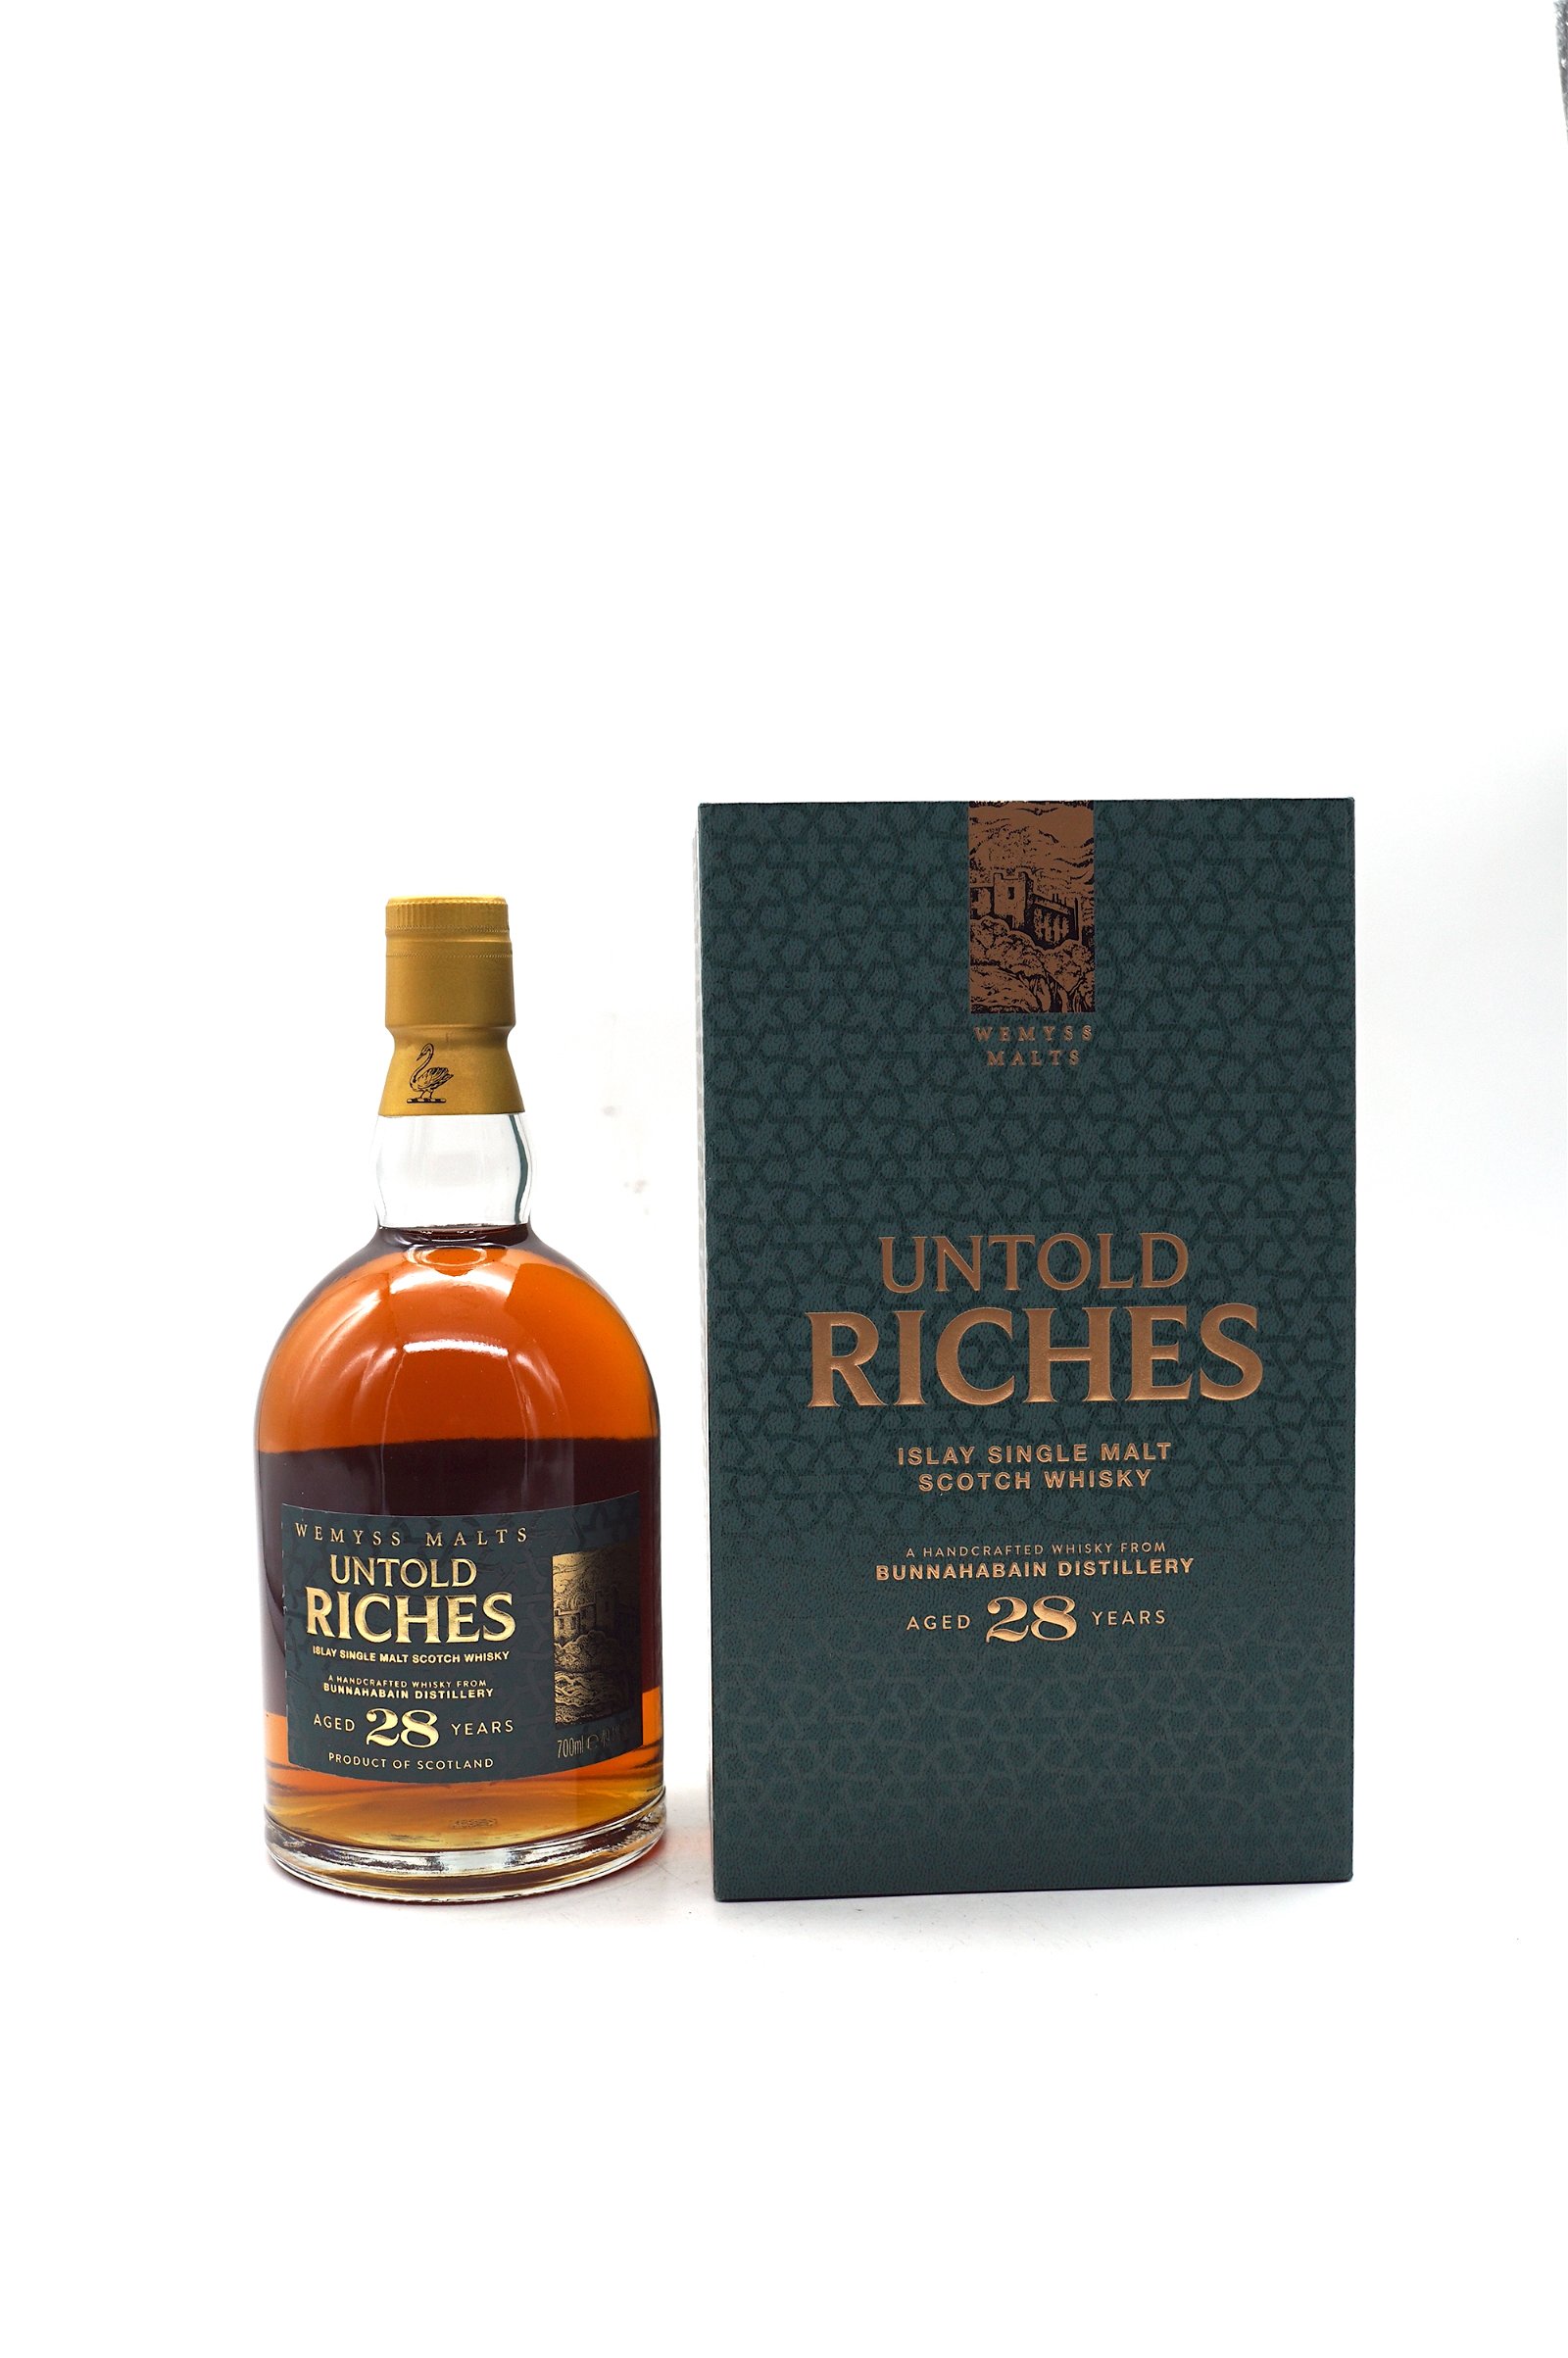 Wemyss Malt Untold Riches 28 Jahre Bunnahabhain Distillery Islay Single Malt Scotch Whisky